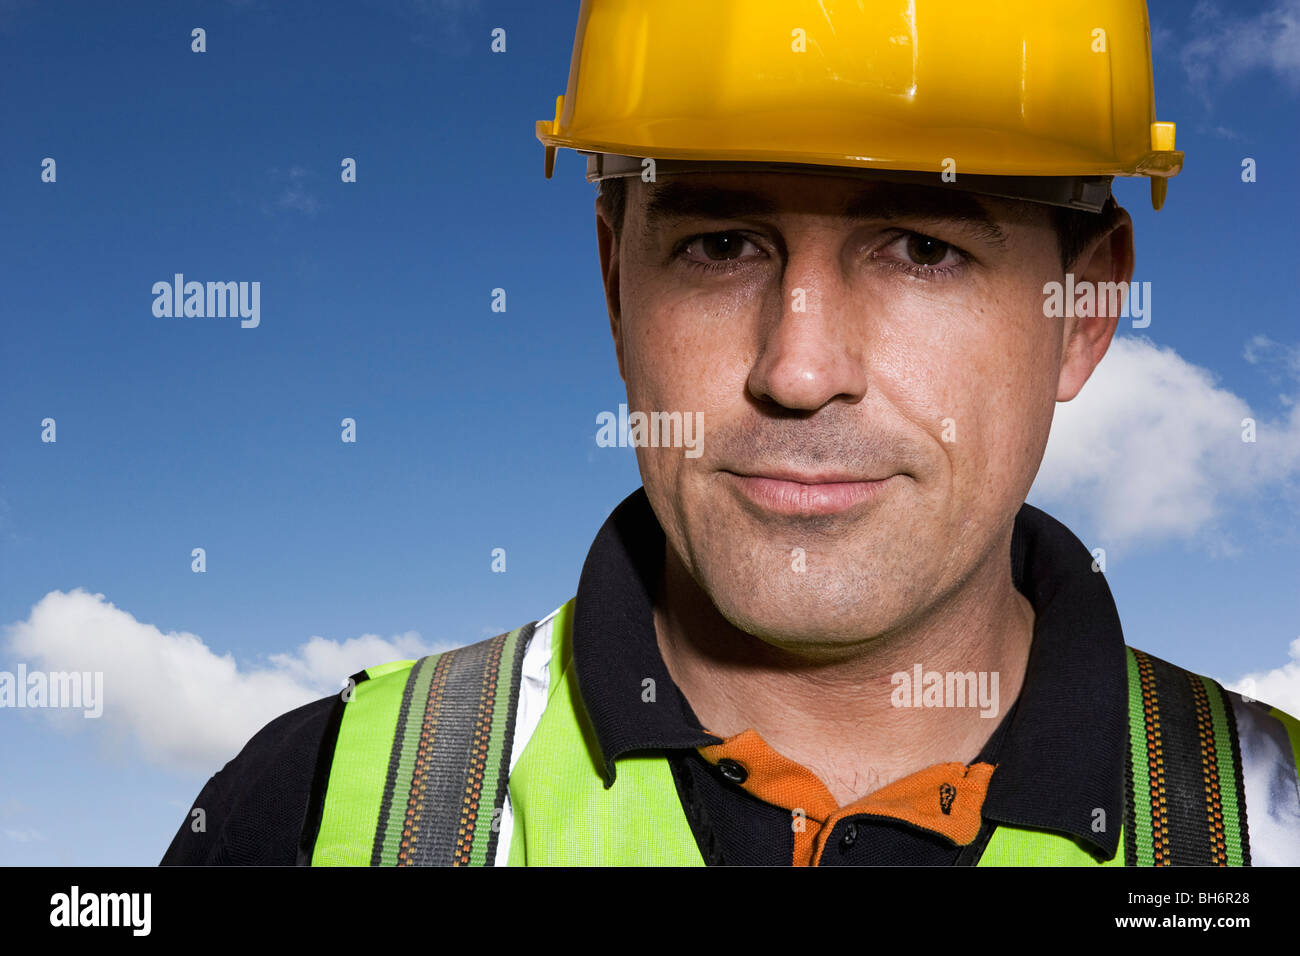 Construction worker portrait Stock Photo